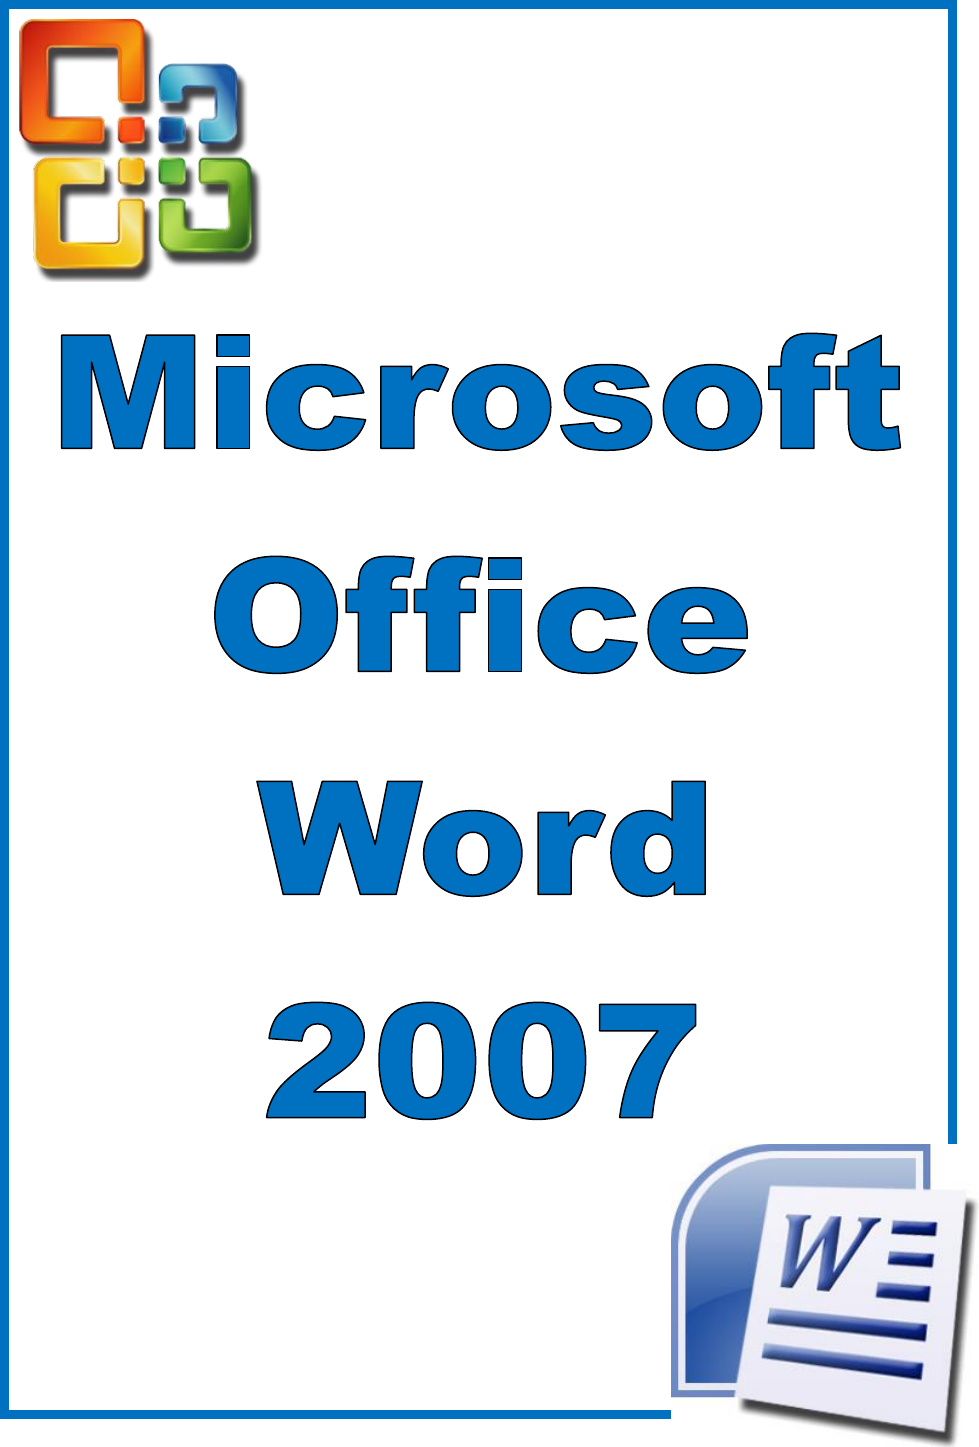 Digitando e editando textos no word 2007 